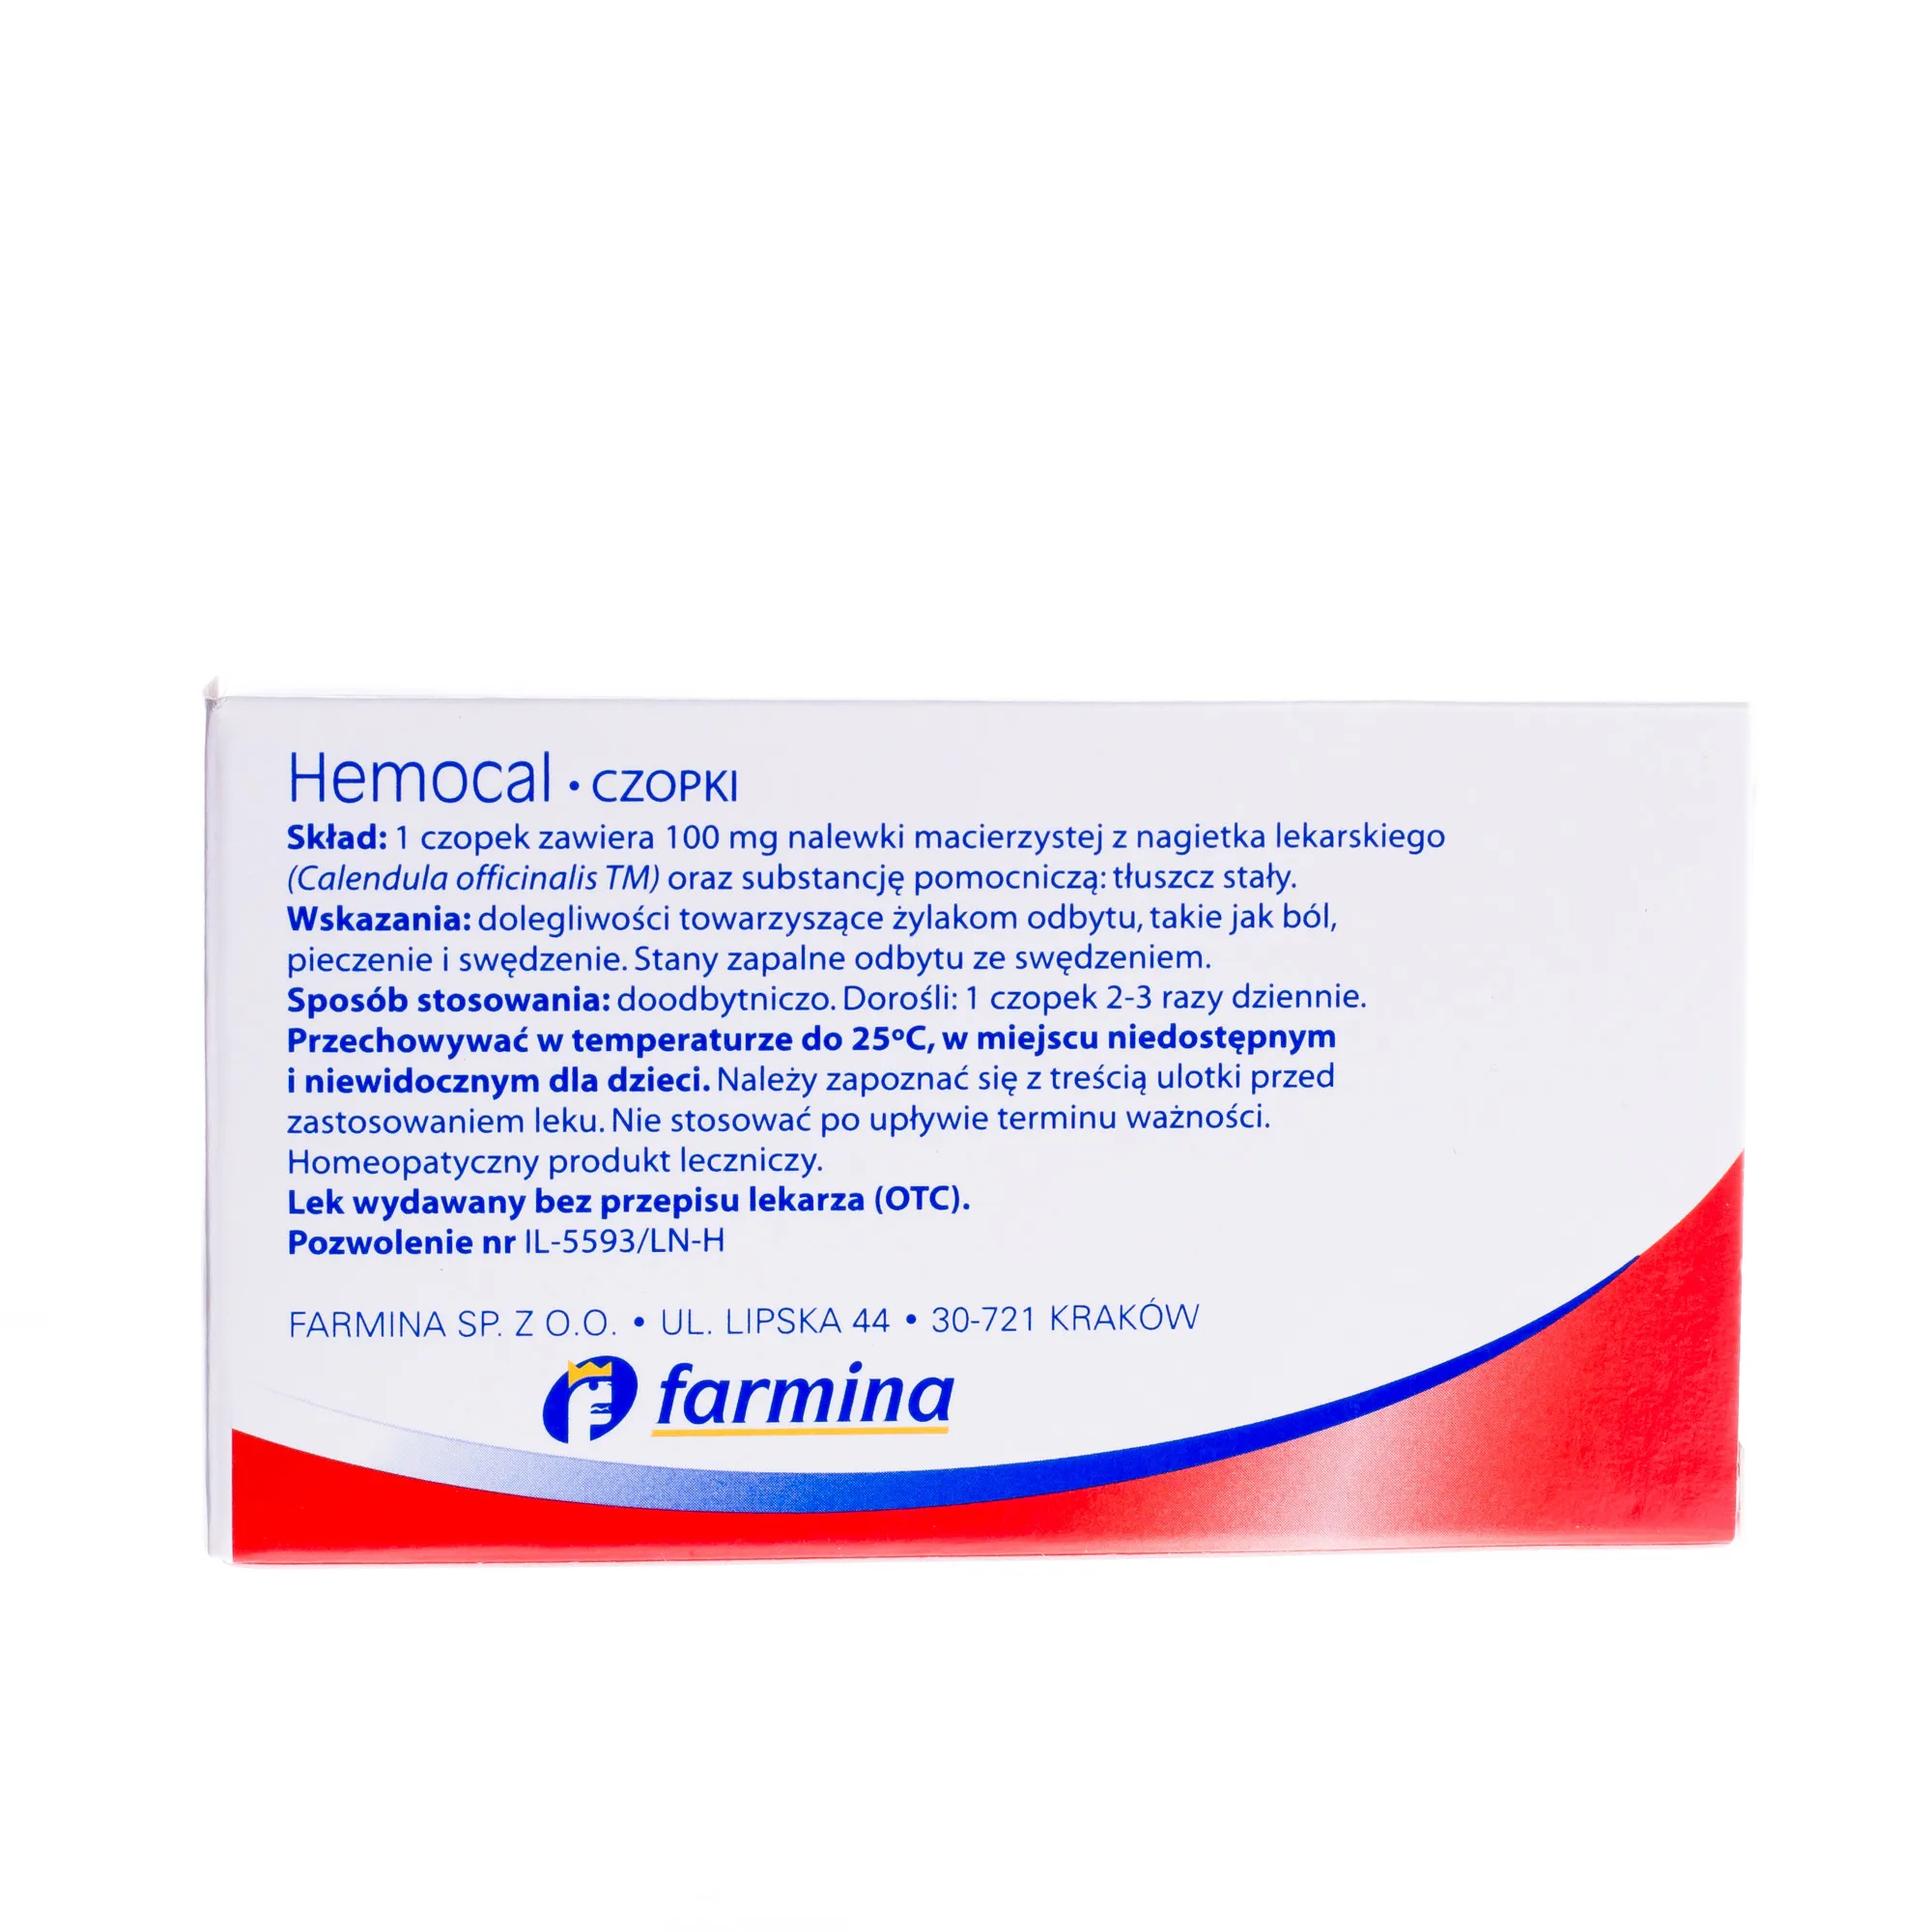 Hemocal Czopki, lek stosowany przy żylakach odbytu, 10 czopków 